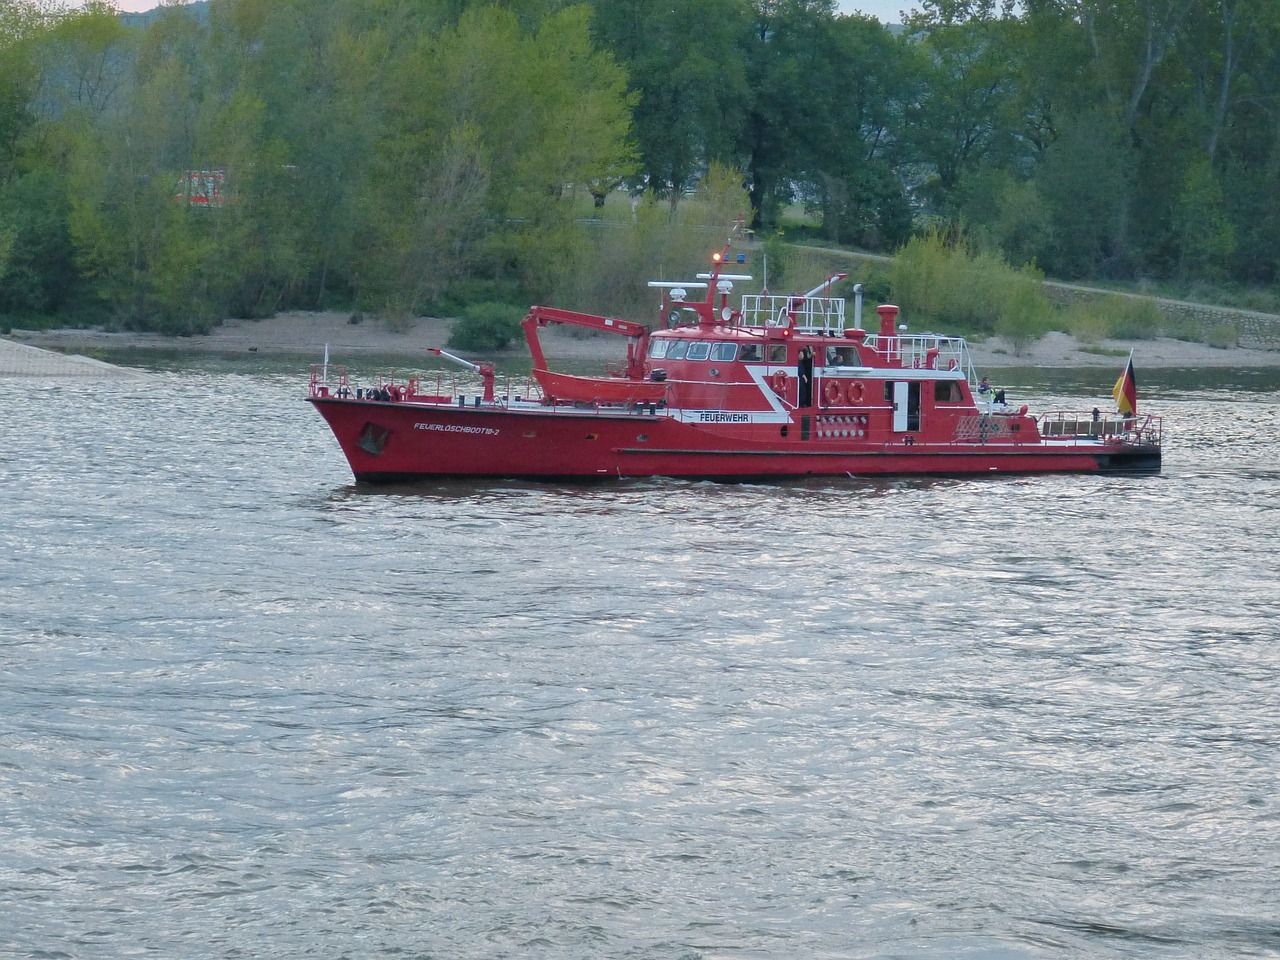 A fireboat near shore